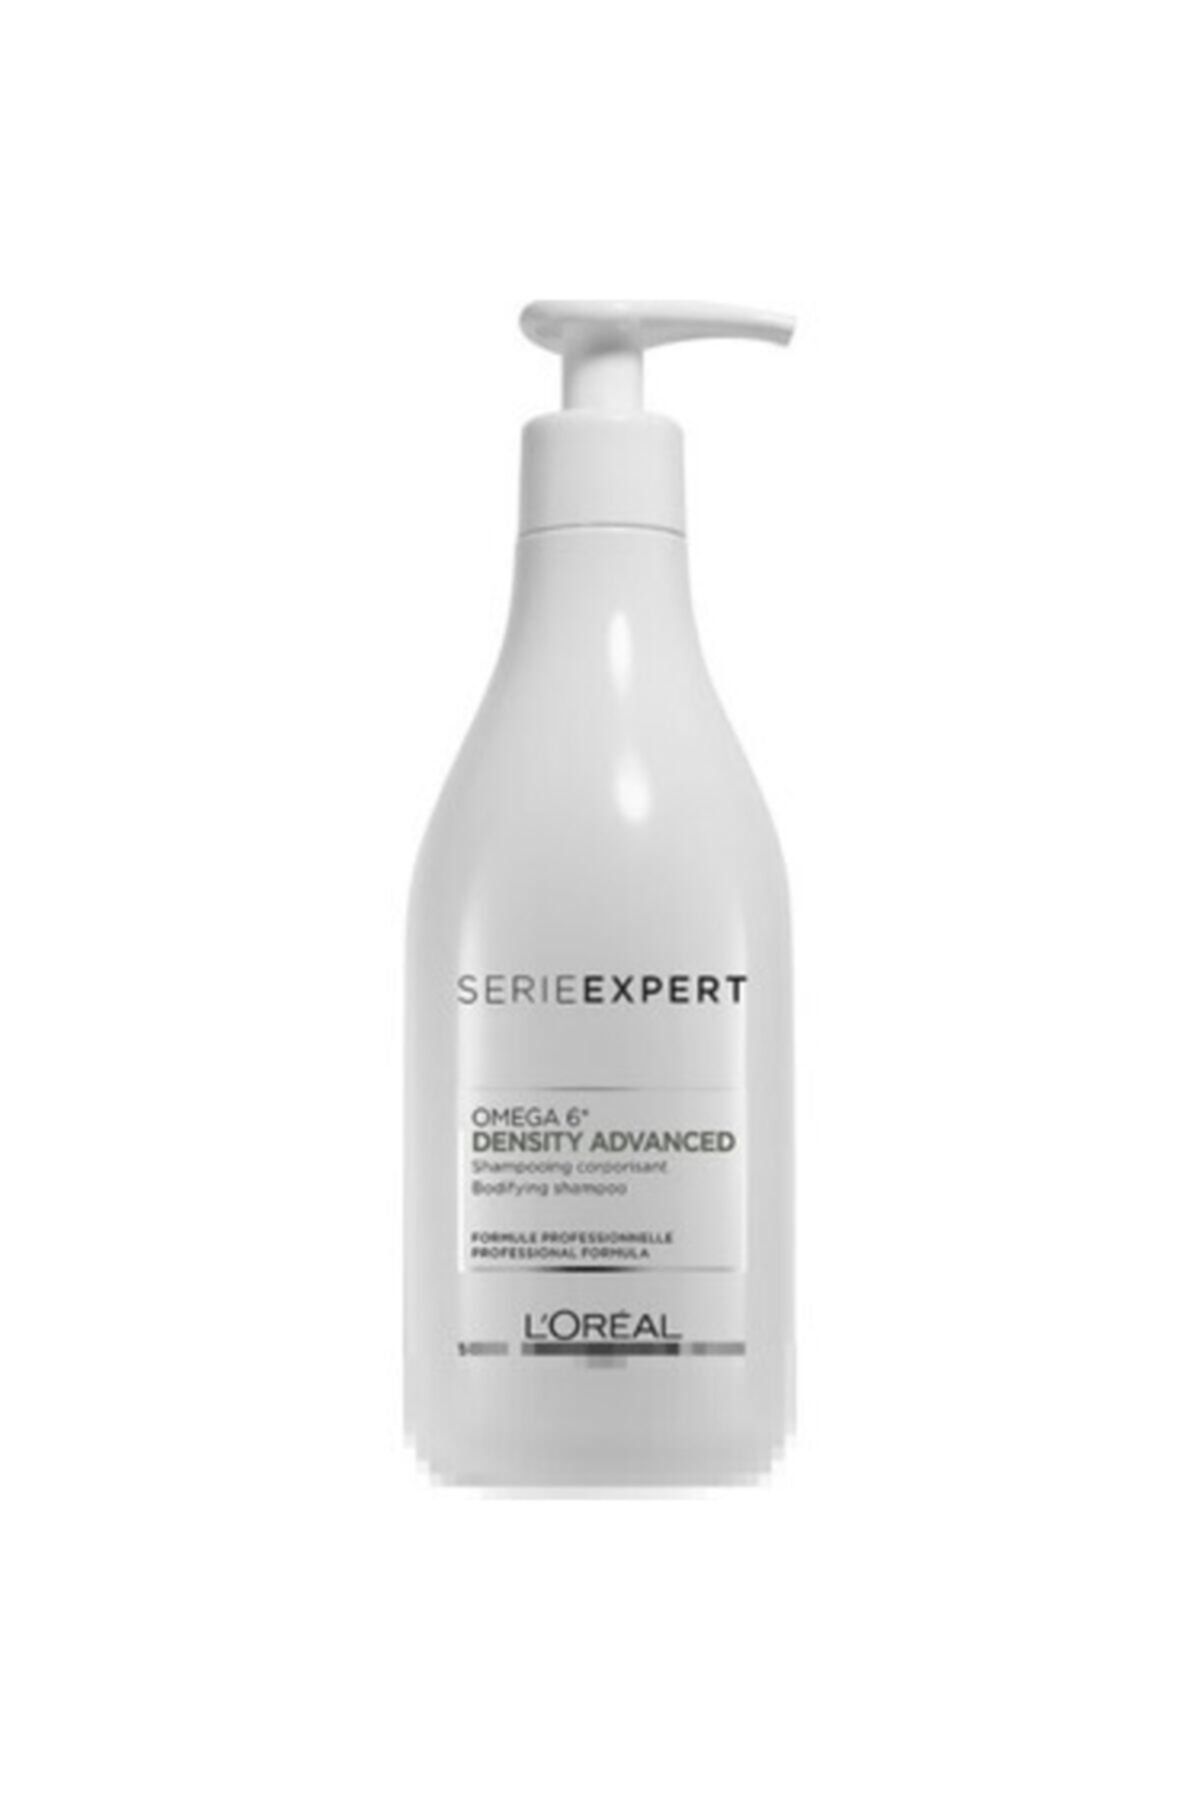 Loreal expert Density Advanced Saç Dökülmesi Karşıtı Yoğunlaştırıcı Şampuan 500ml